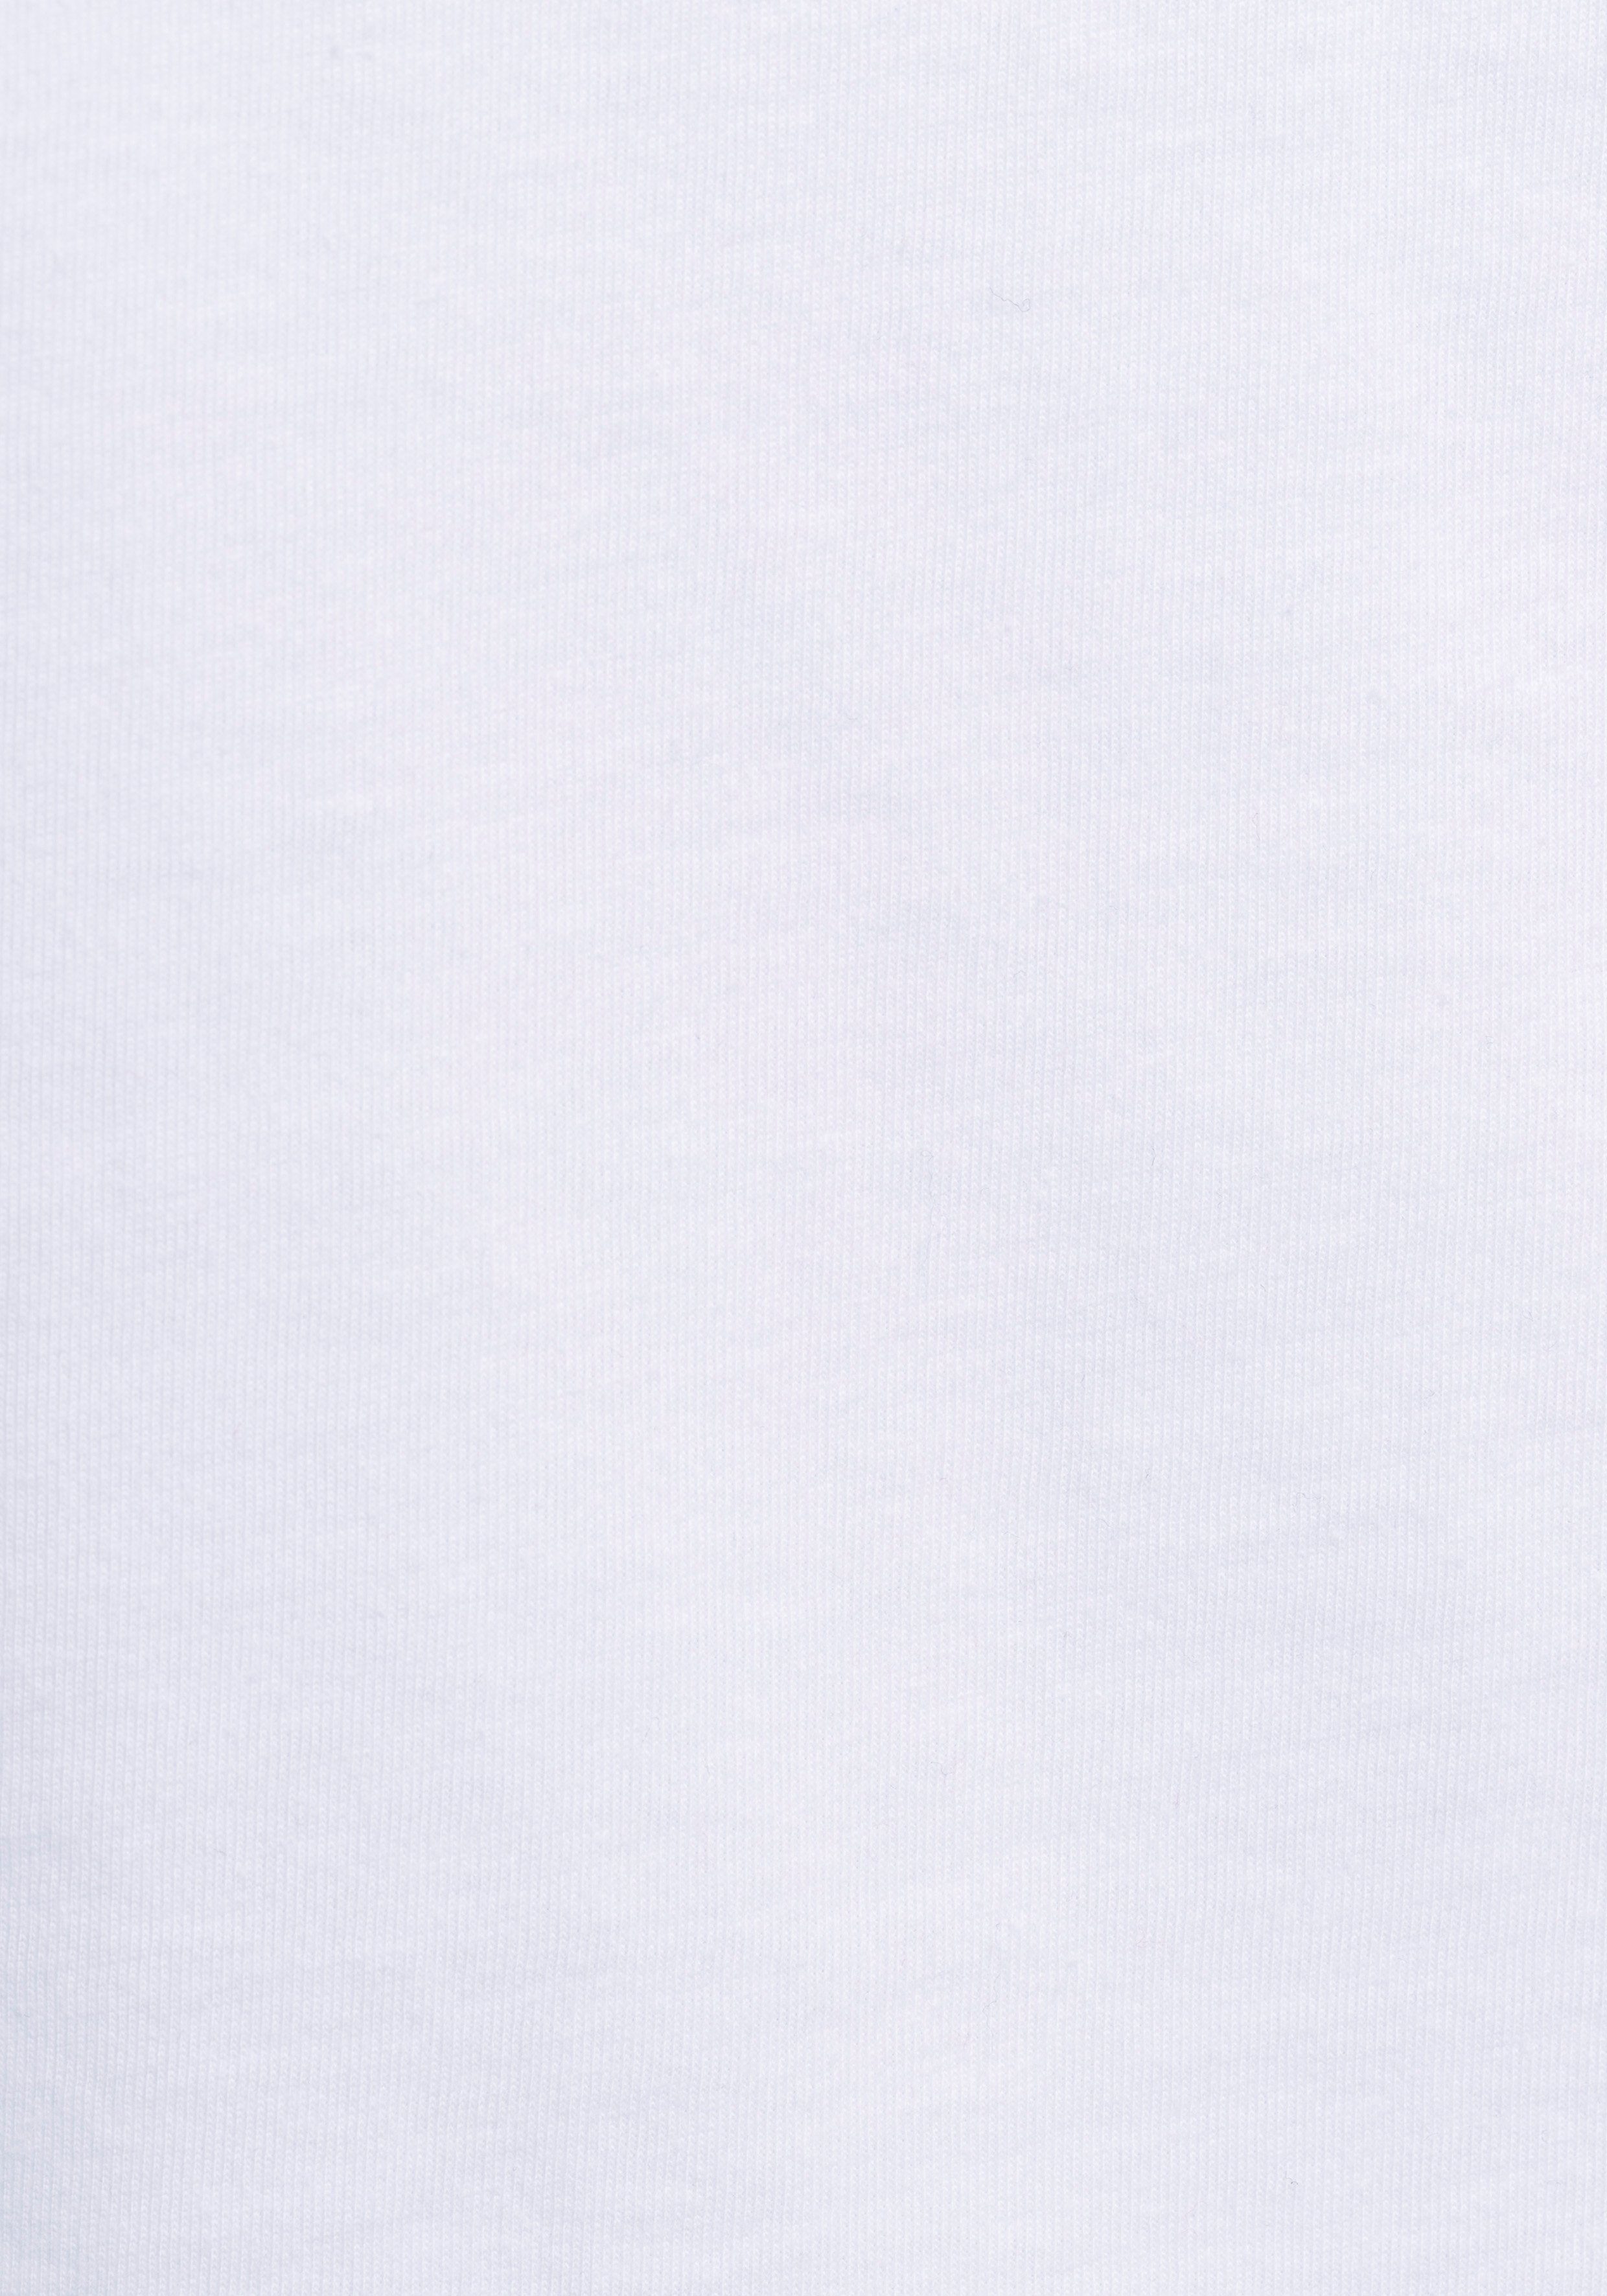 Rundhalsshirt mit gestreift kleiner Doppelpack Stickerei im AJC marine-weiß solid +